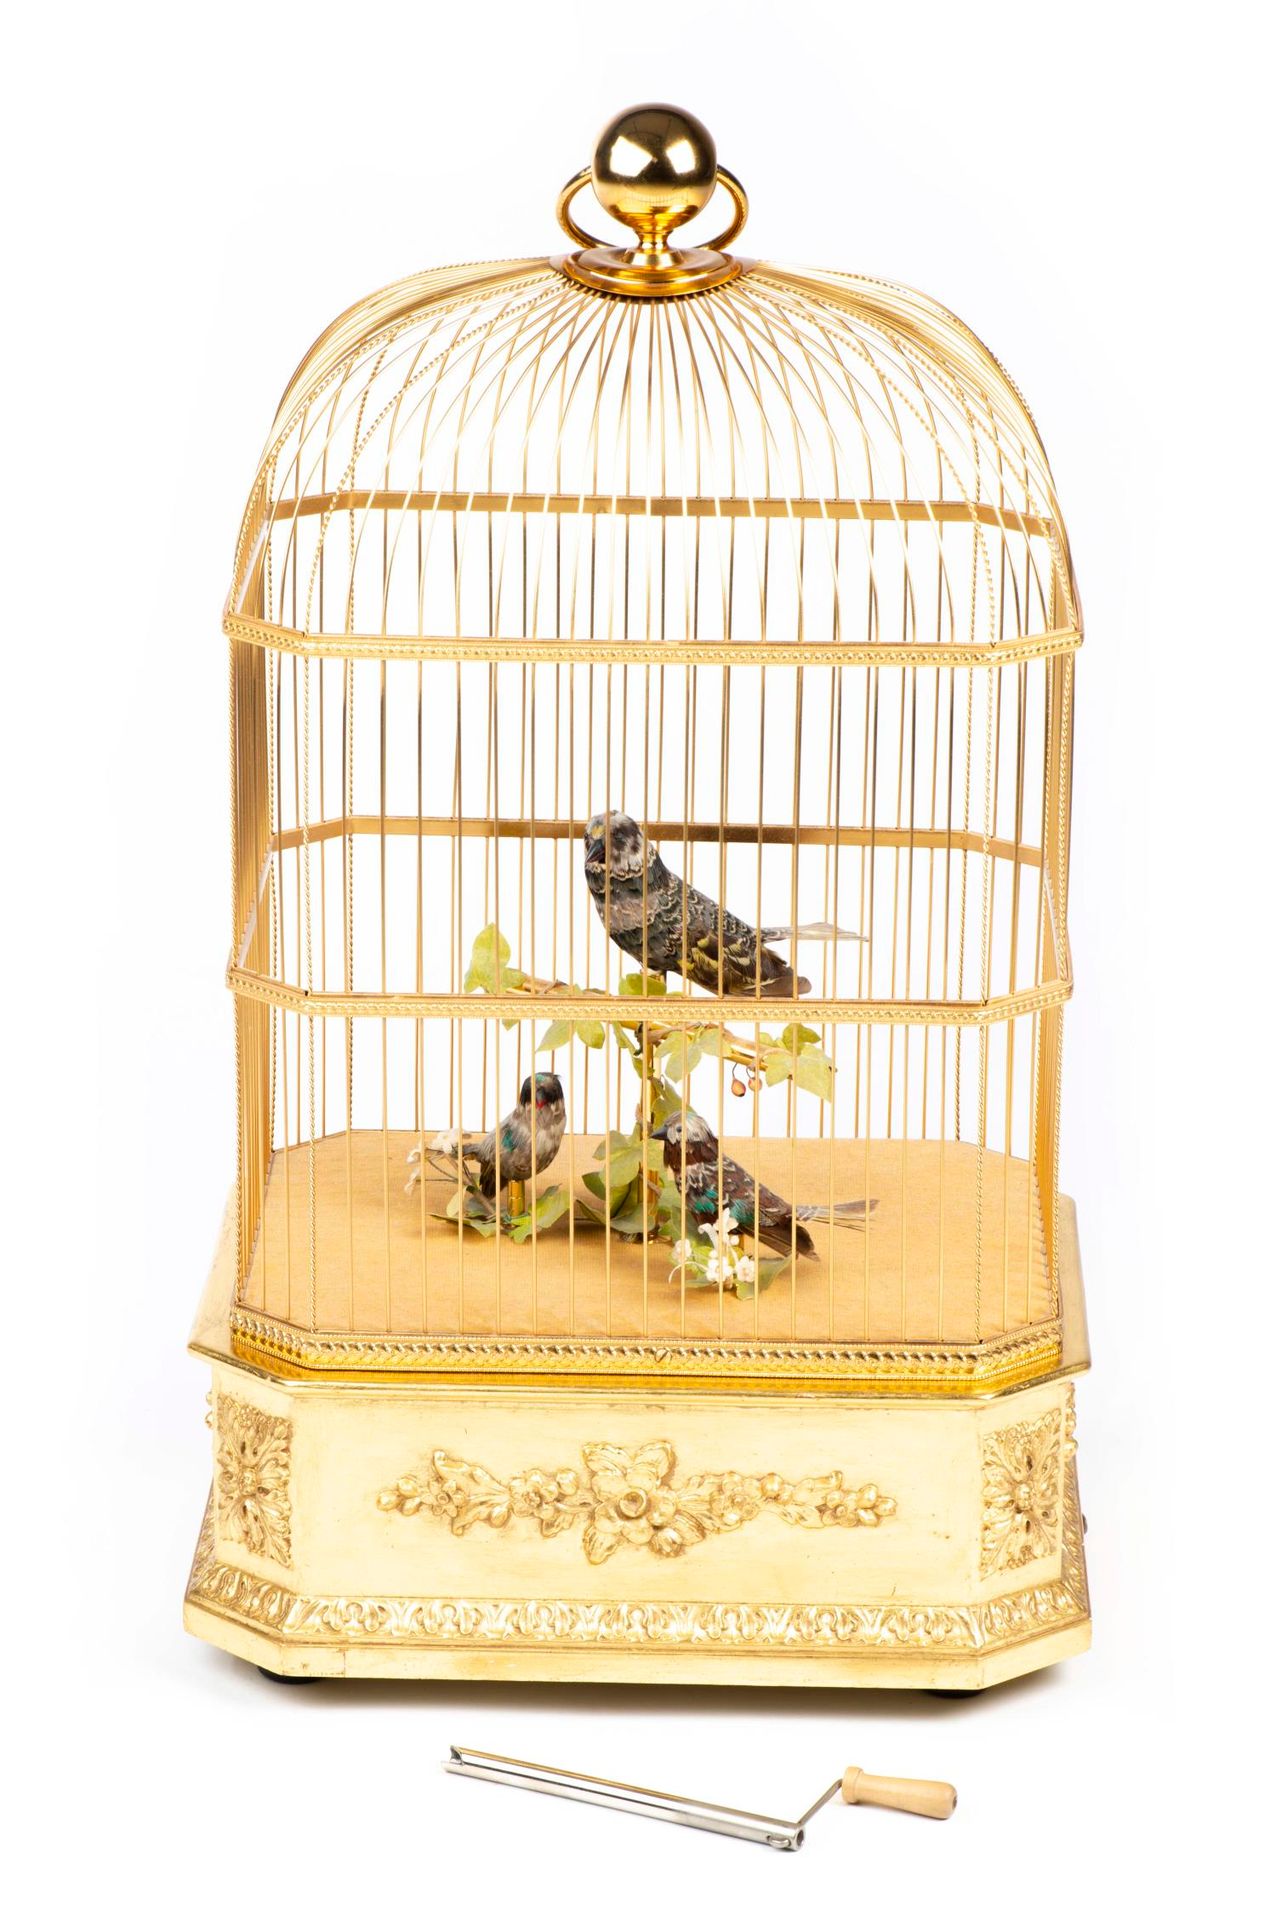 Null REUGE, automa 'Cage à oiseaux chanteurs', meccanico con 3 uccelli.

55 x 32&hellip;